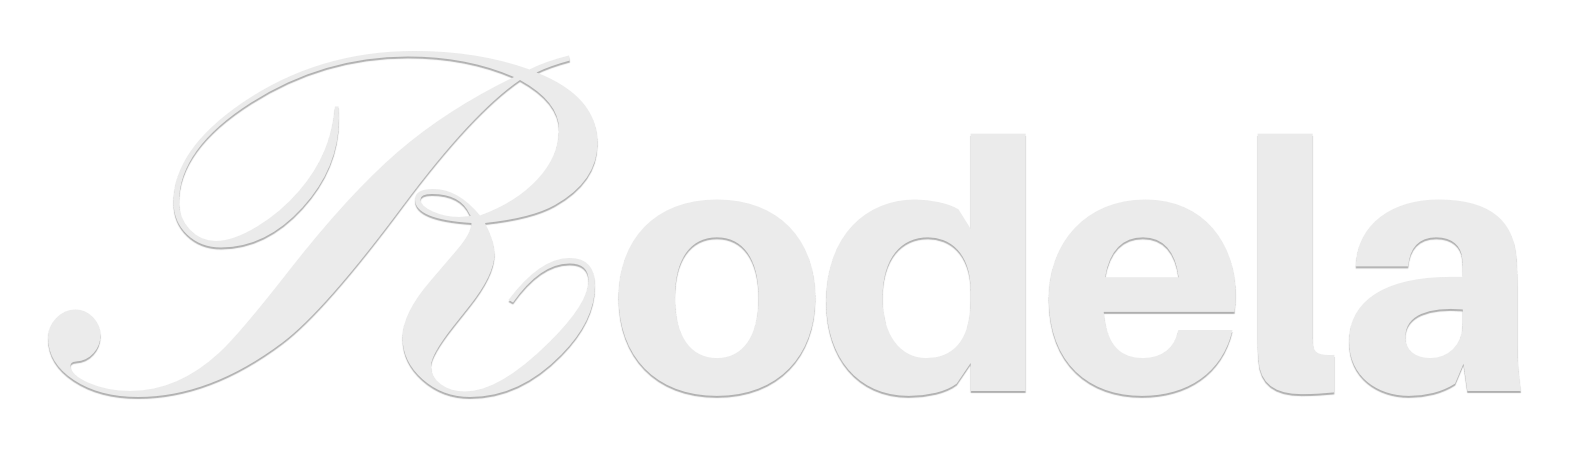 Rodela - Gospel Music Artist logo